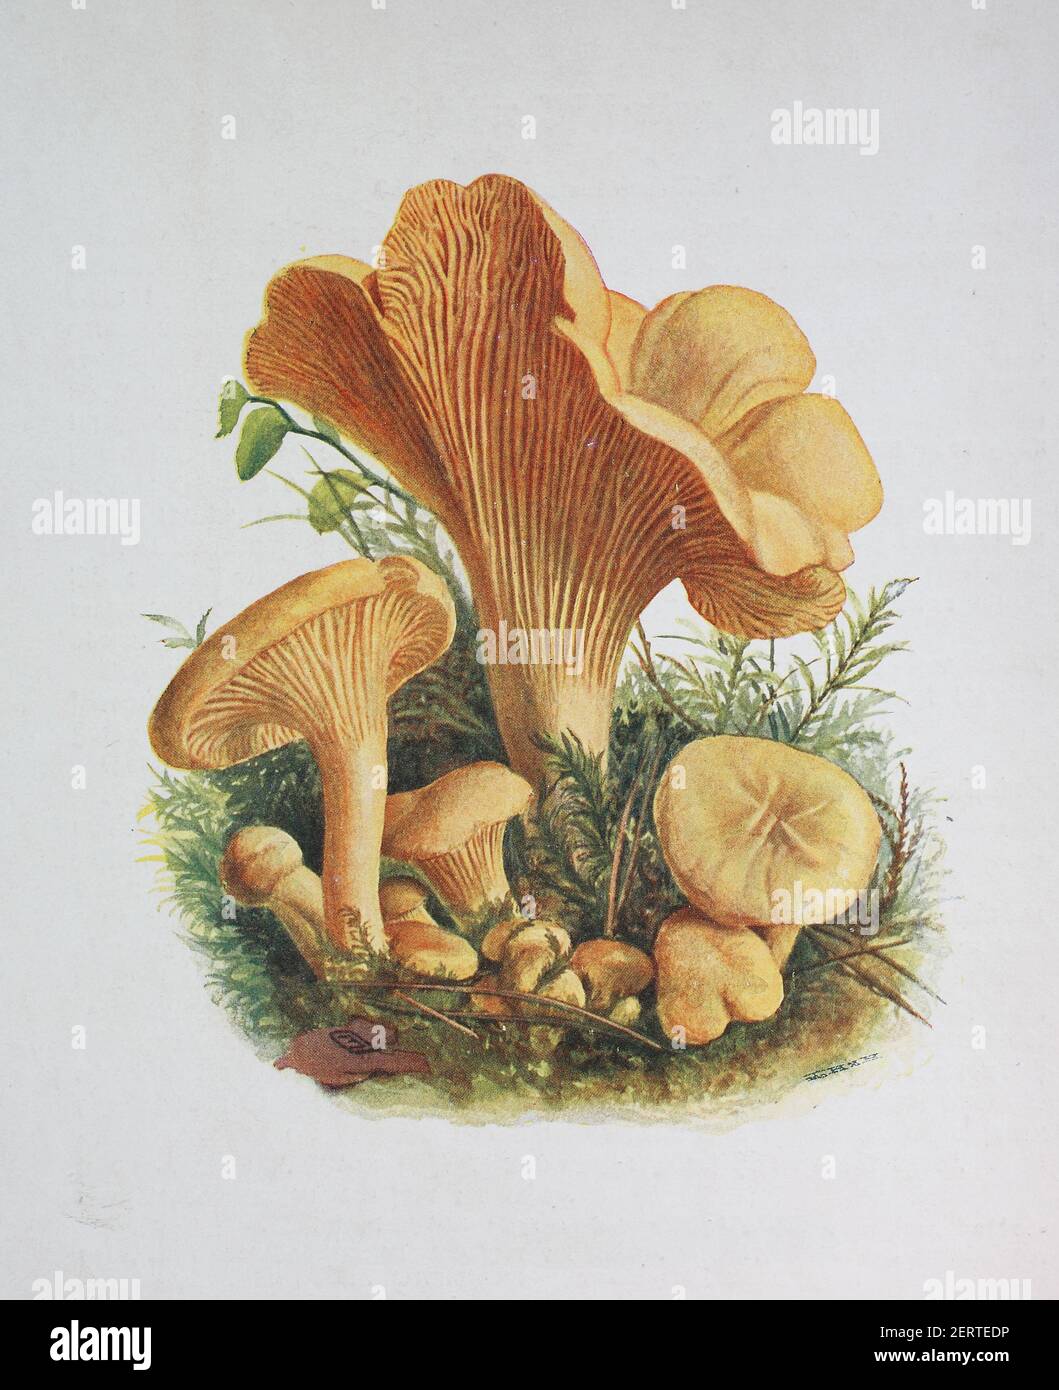 Cantharellus cibarius, allgemein bekannt als die Pfifferelle, oder girolle, digitale Reproduktion einer Ilustration von Emil Doerstling (1859-1940) Stockfoto